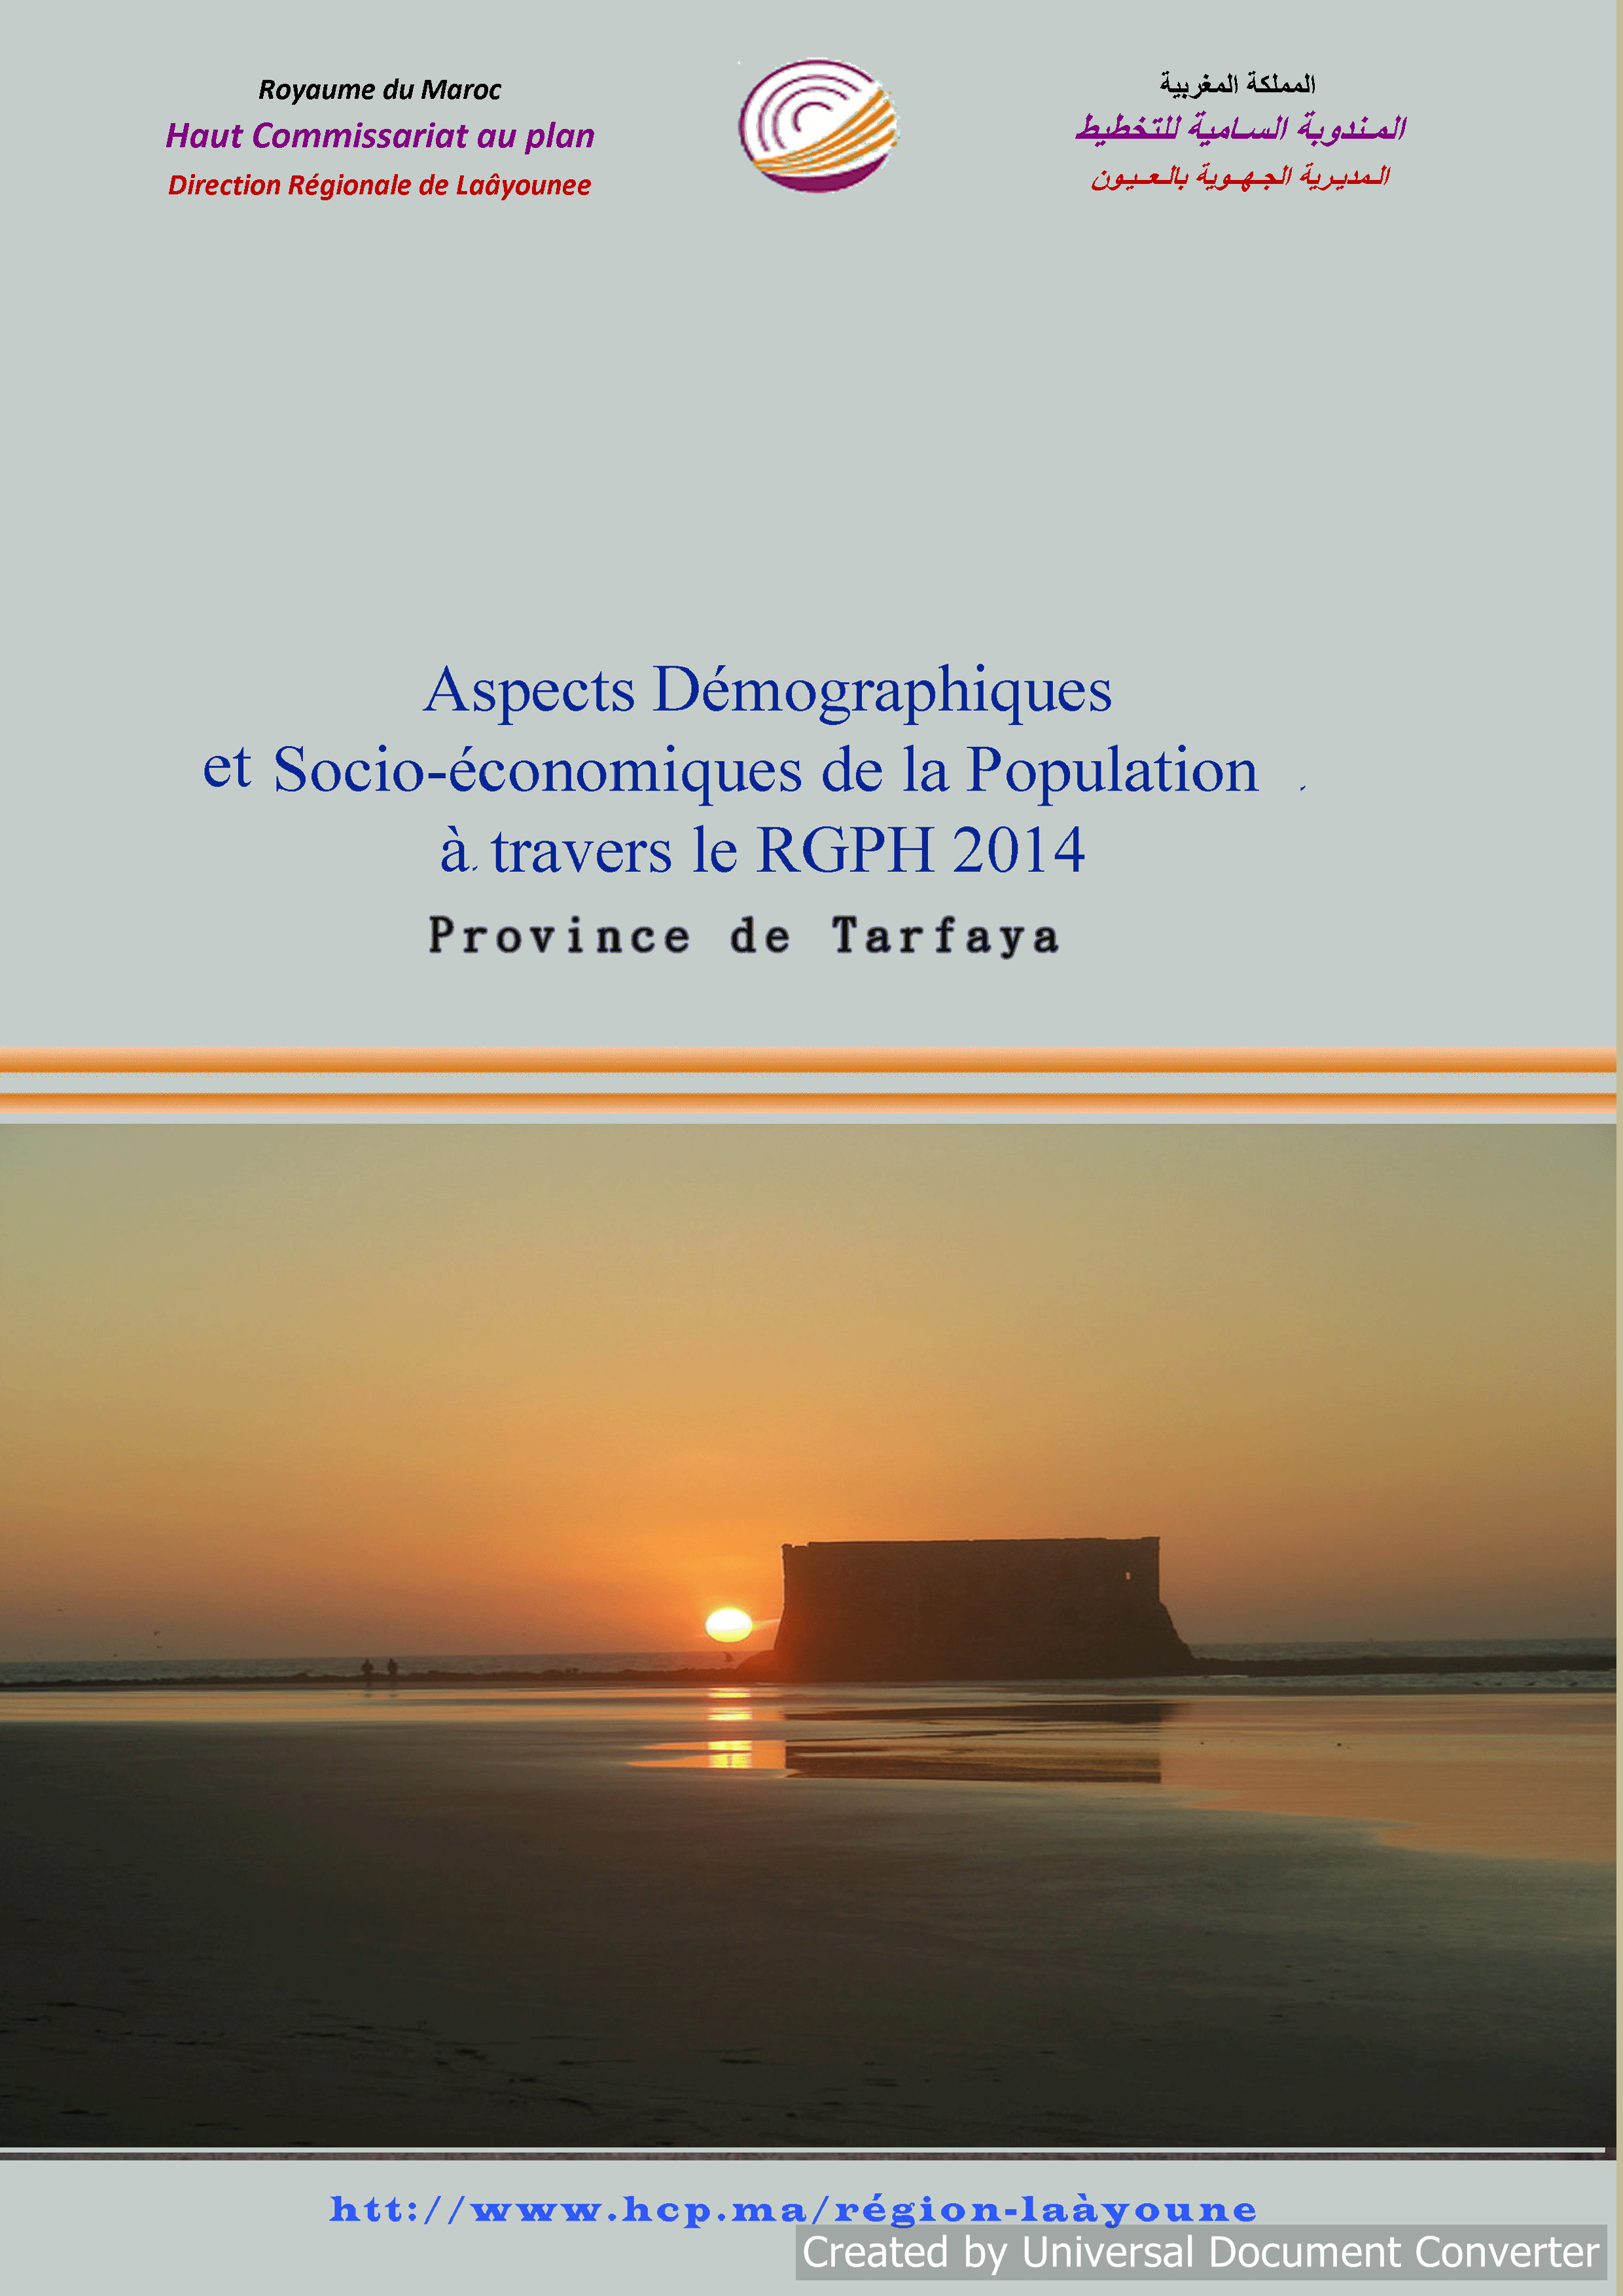 Aspects Démographiques et Socio-économiques de la Population à travers le RGPH 2014 Province de Tarfaya.